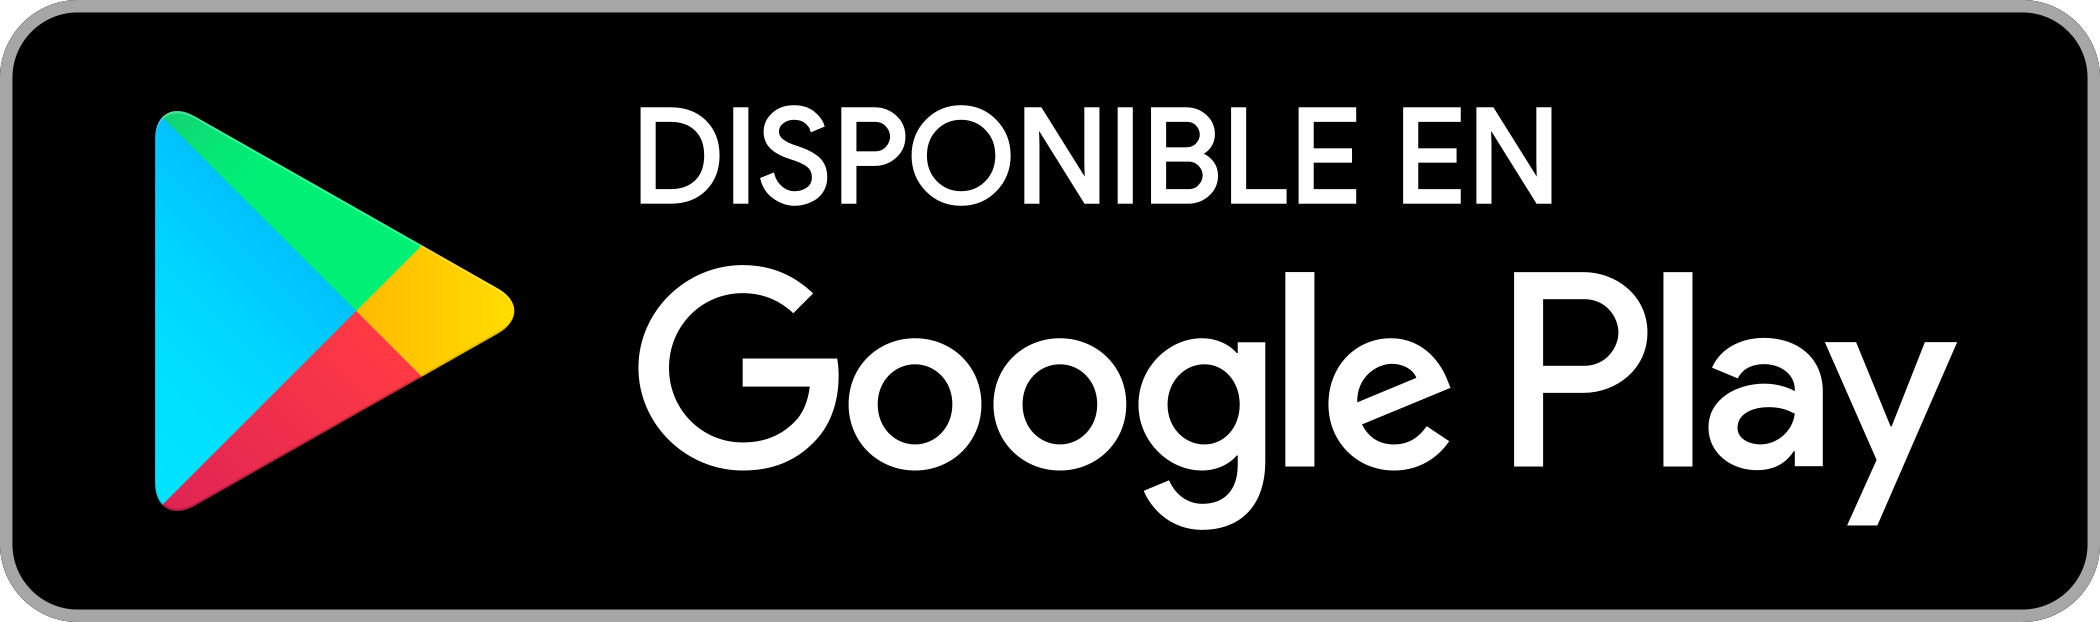 disponible en google play badge 1 - Disponible en Google Play Logo